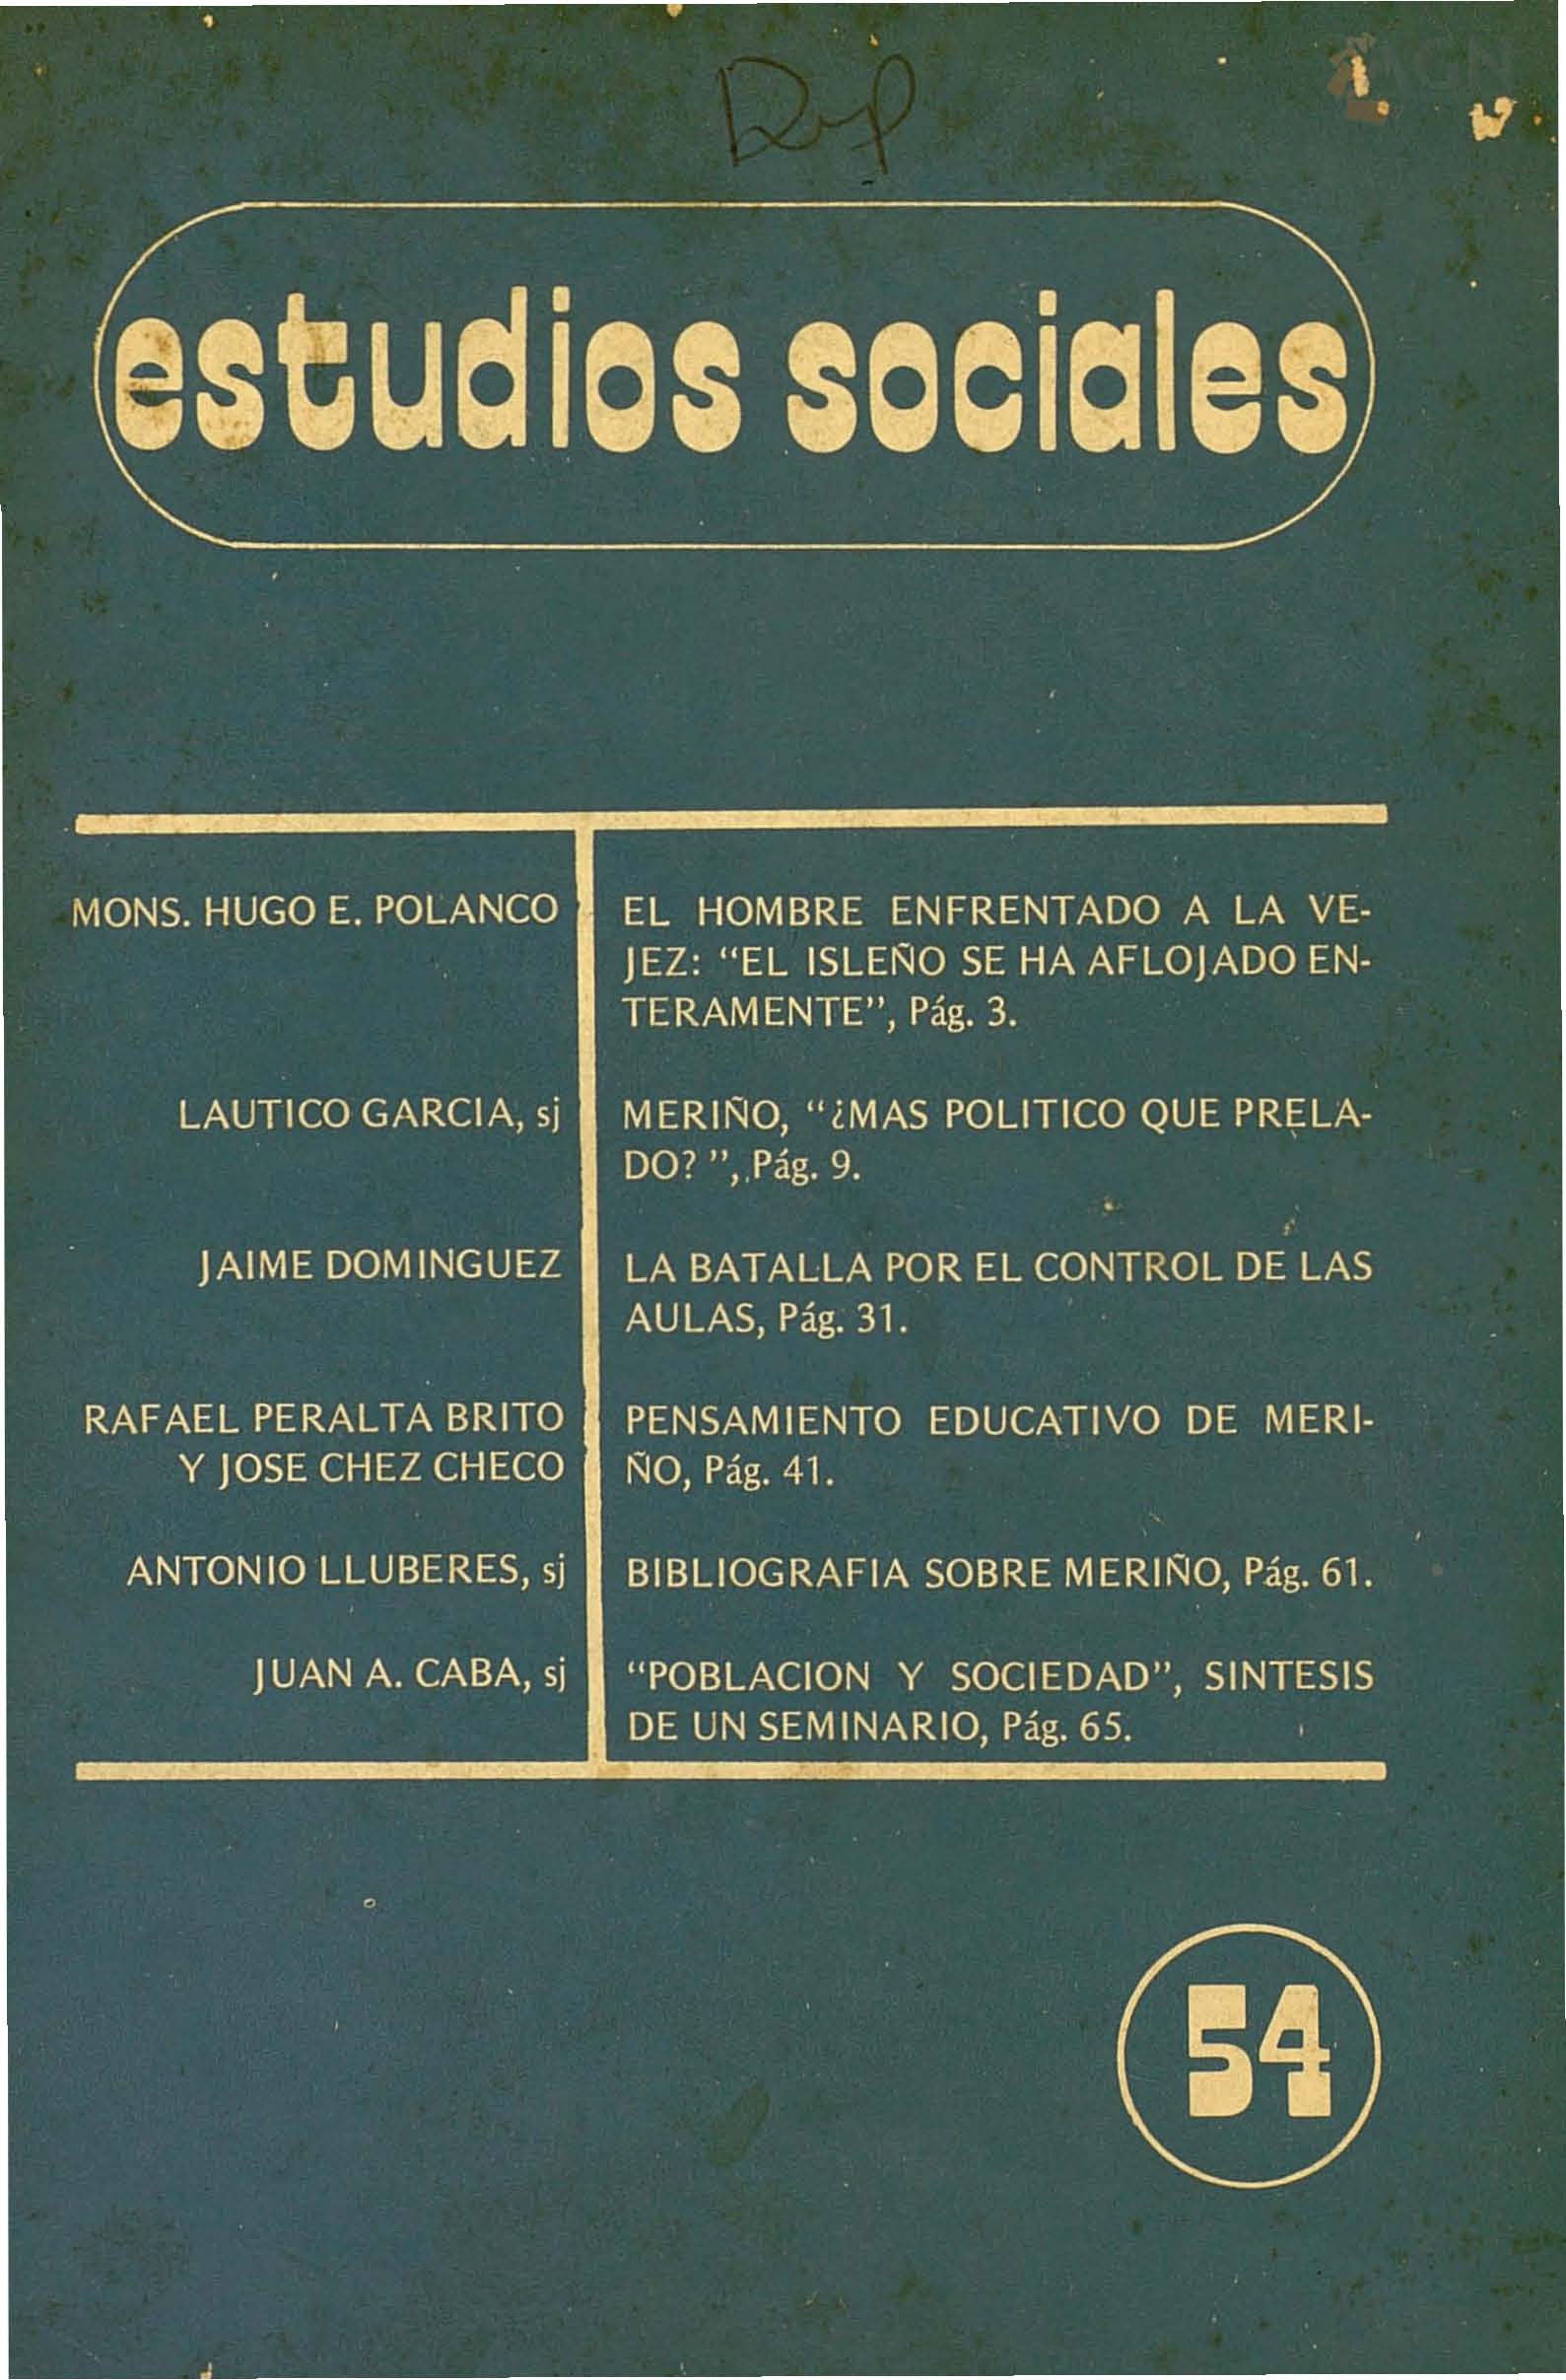 						View Vol. 16 No. 54 (1983): Fernando Arturo de Meriño (1833-1906)
					